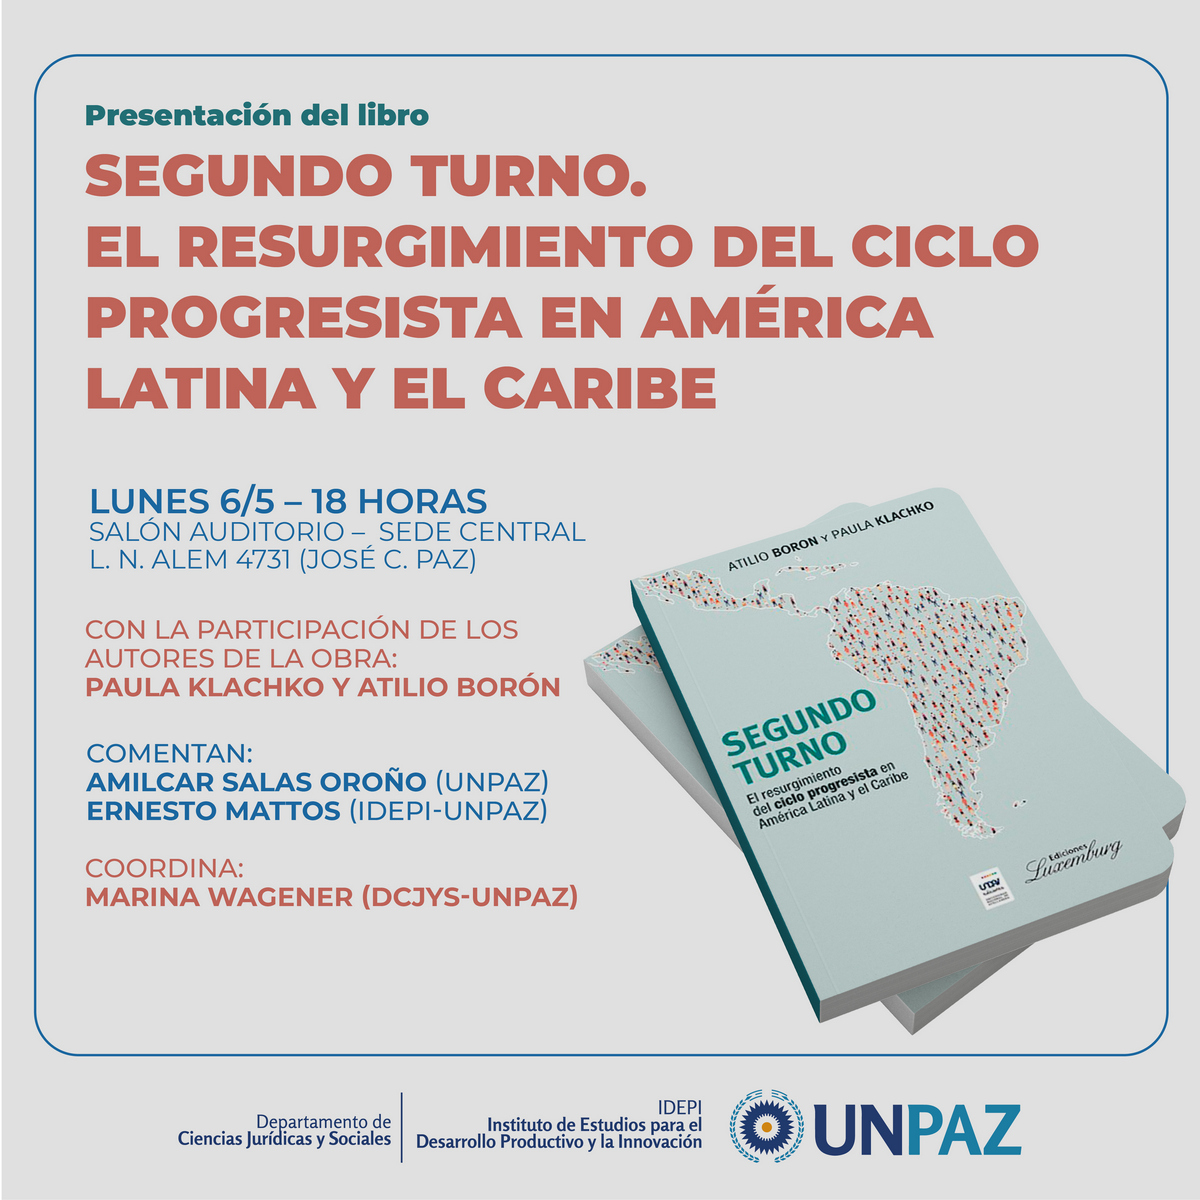  Presentación del libro: Segundo Turno. El resurgimiento del ciclo progresista en América Latina y el Caribe